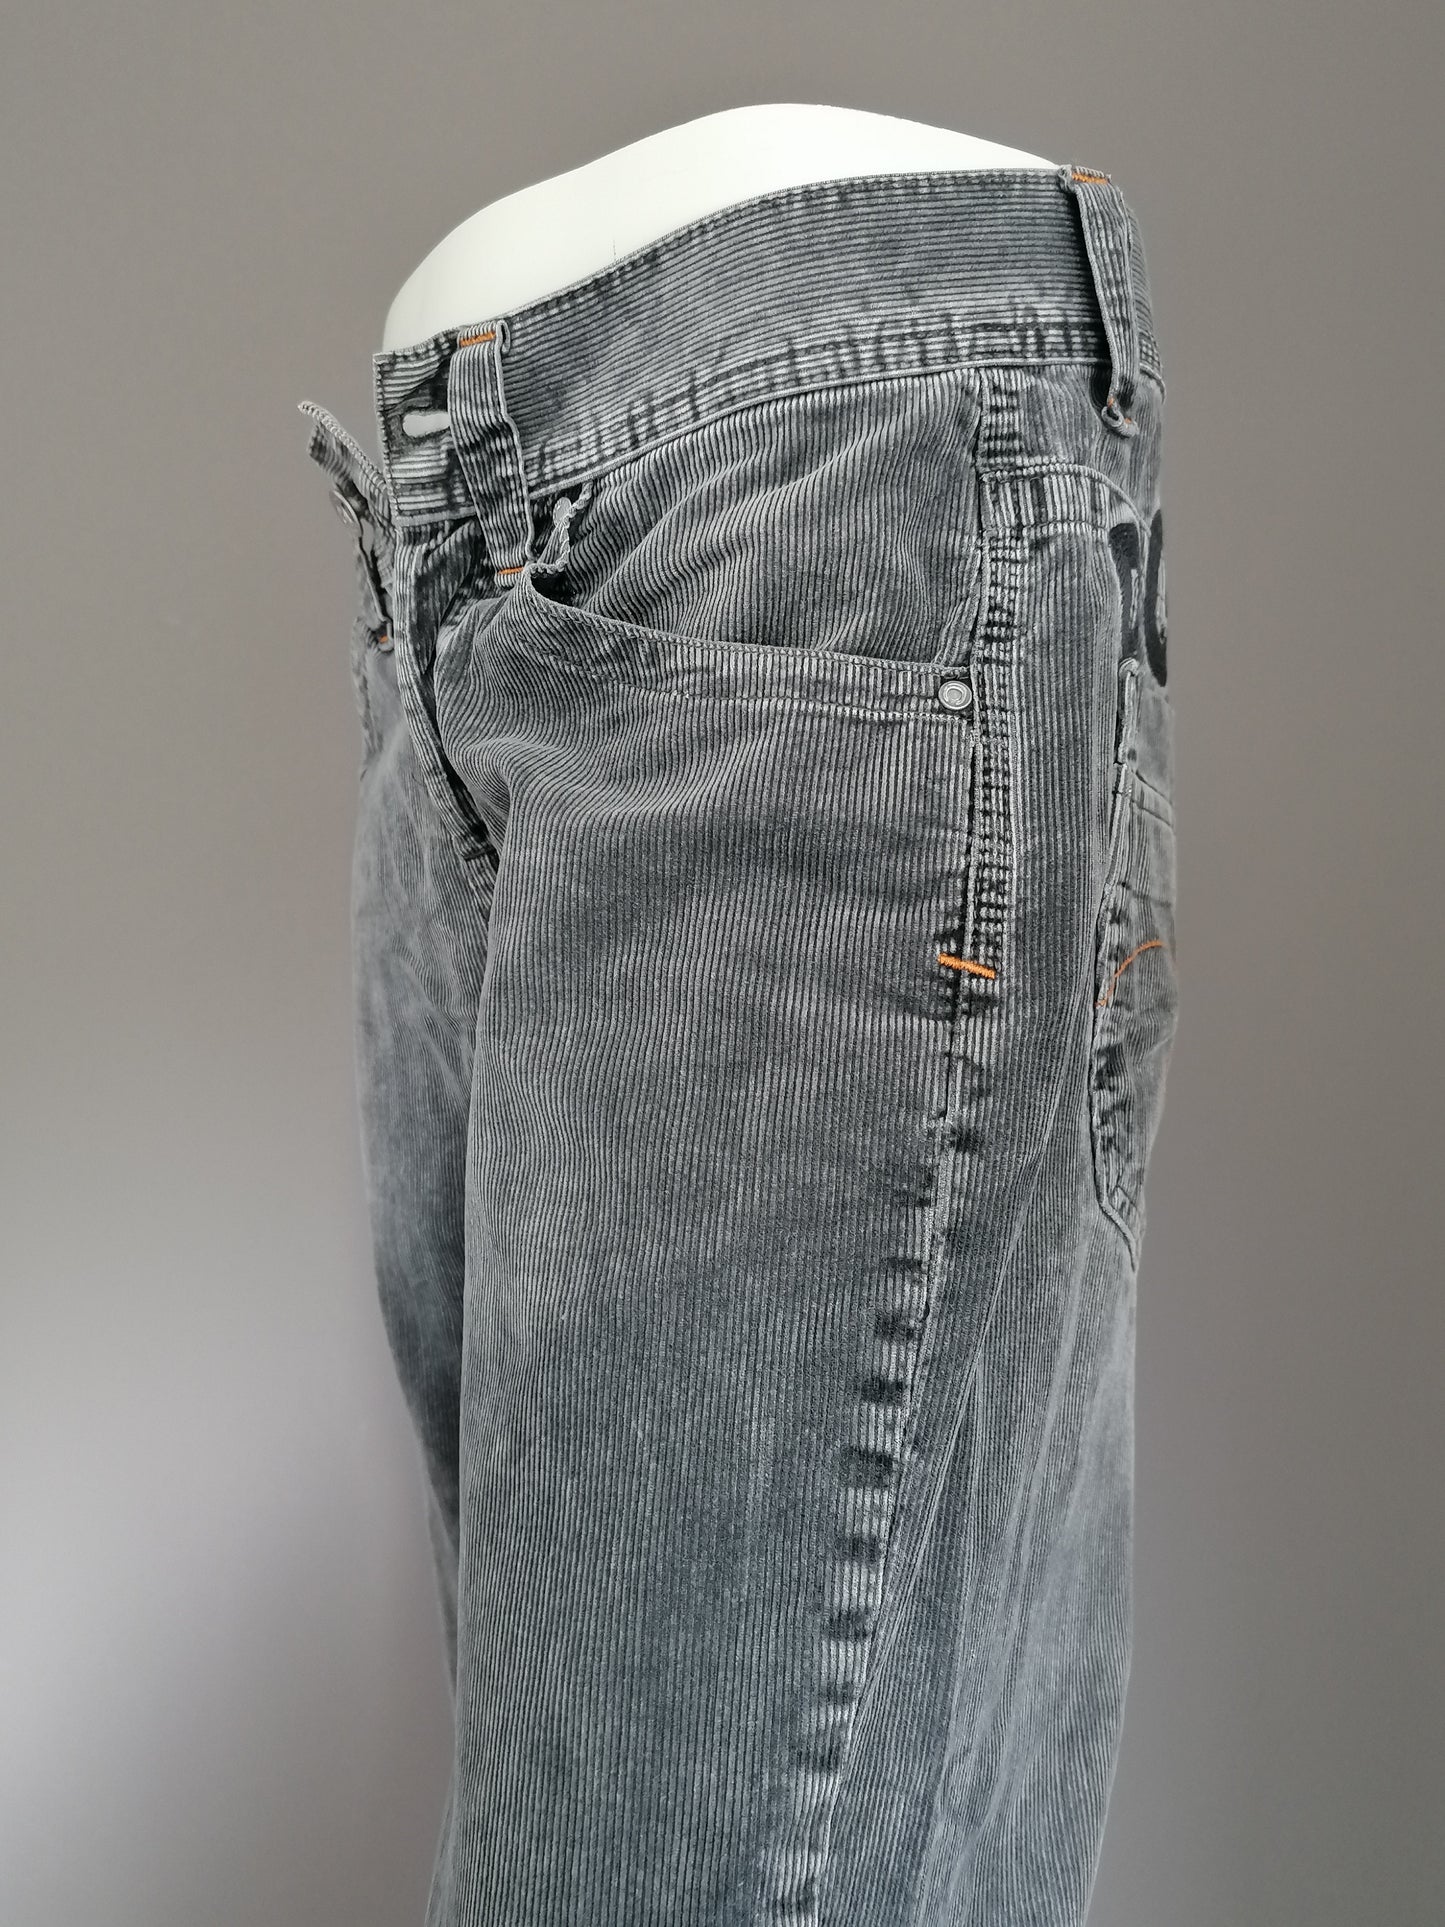 Pantalon de côtes de chavire. Coloré gris foncé. Taille W30 - L34. Tapez une poche basse.